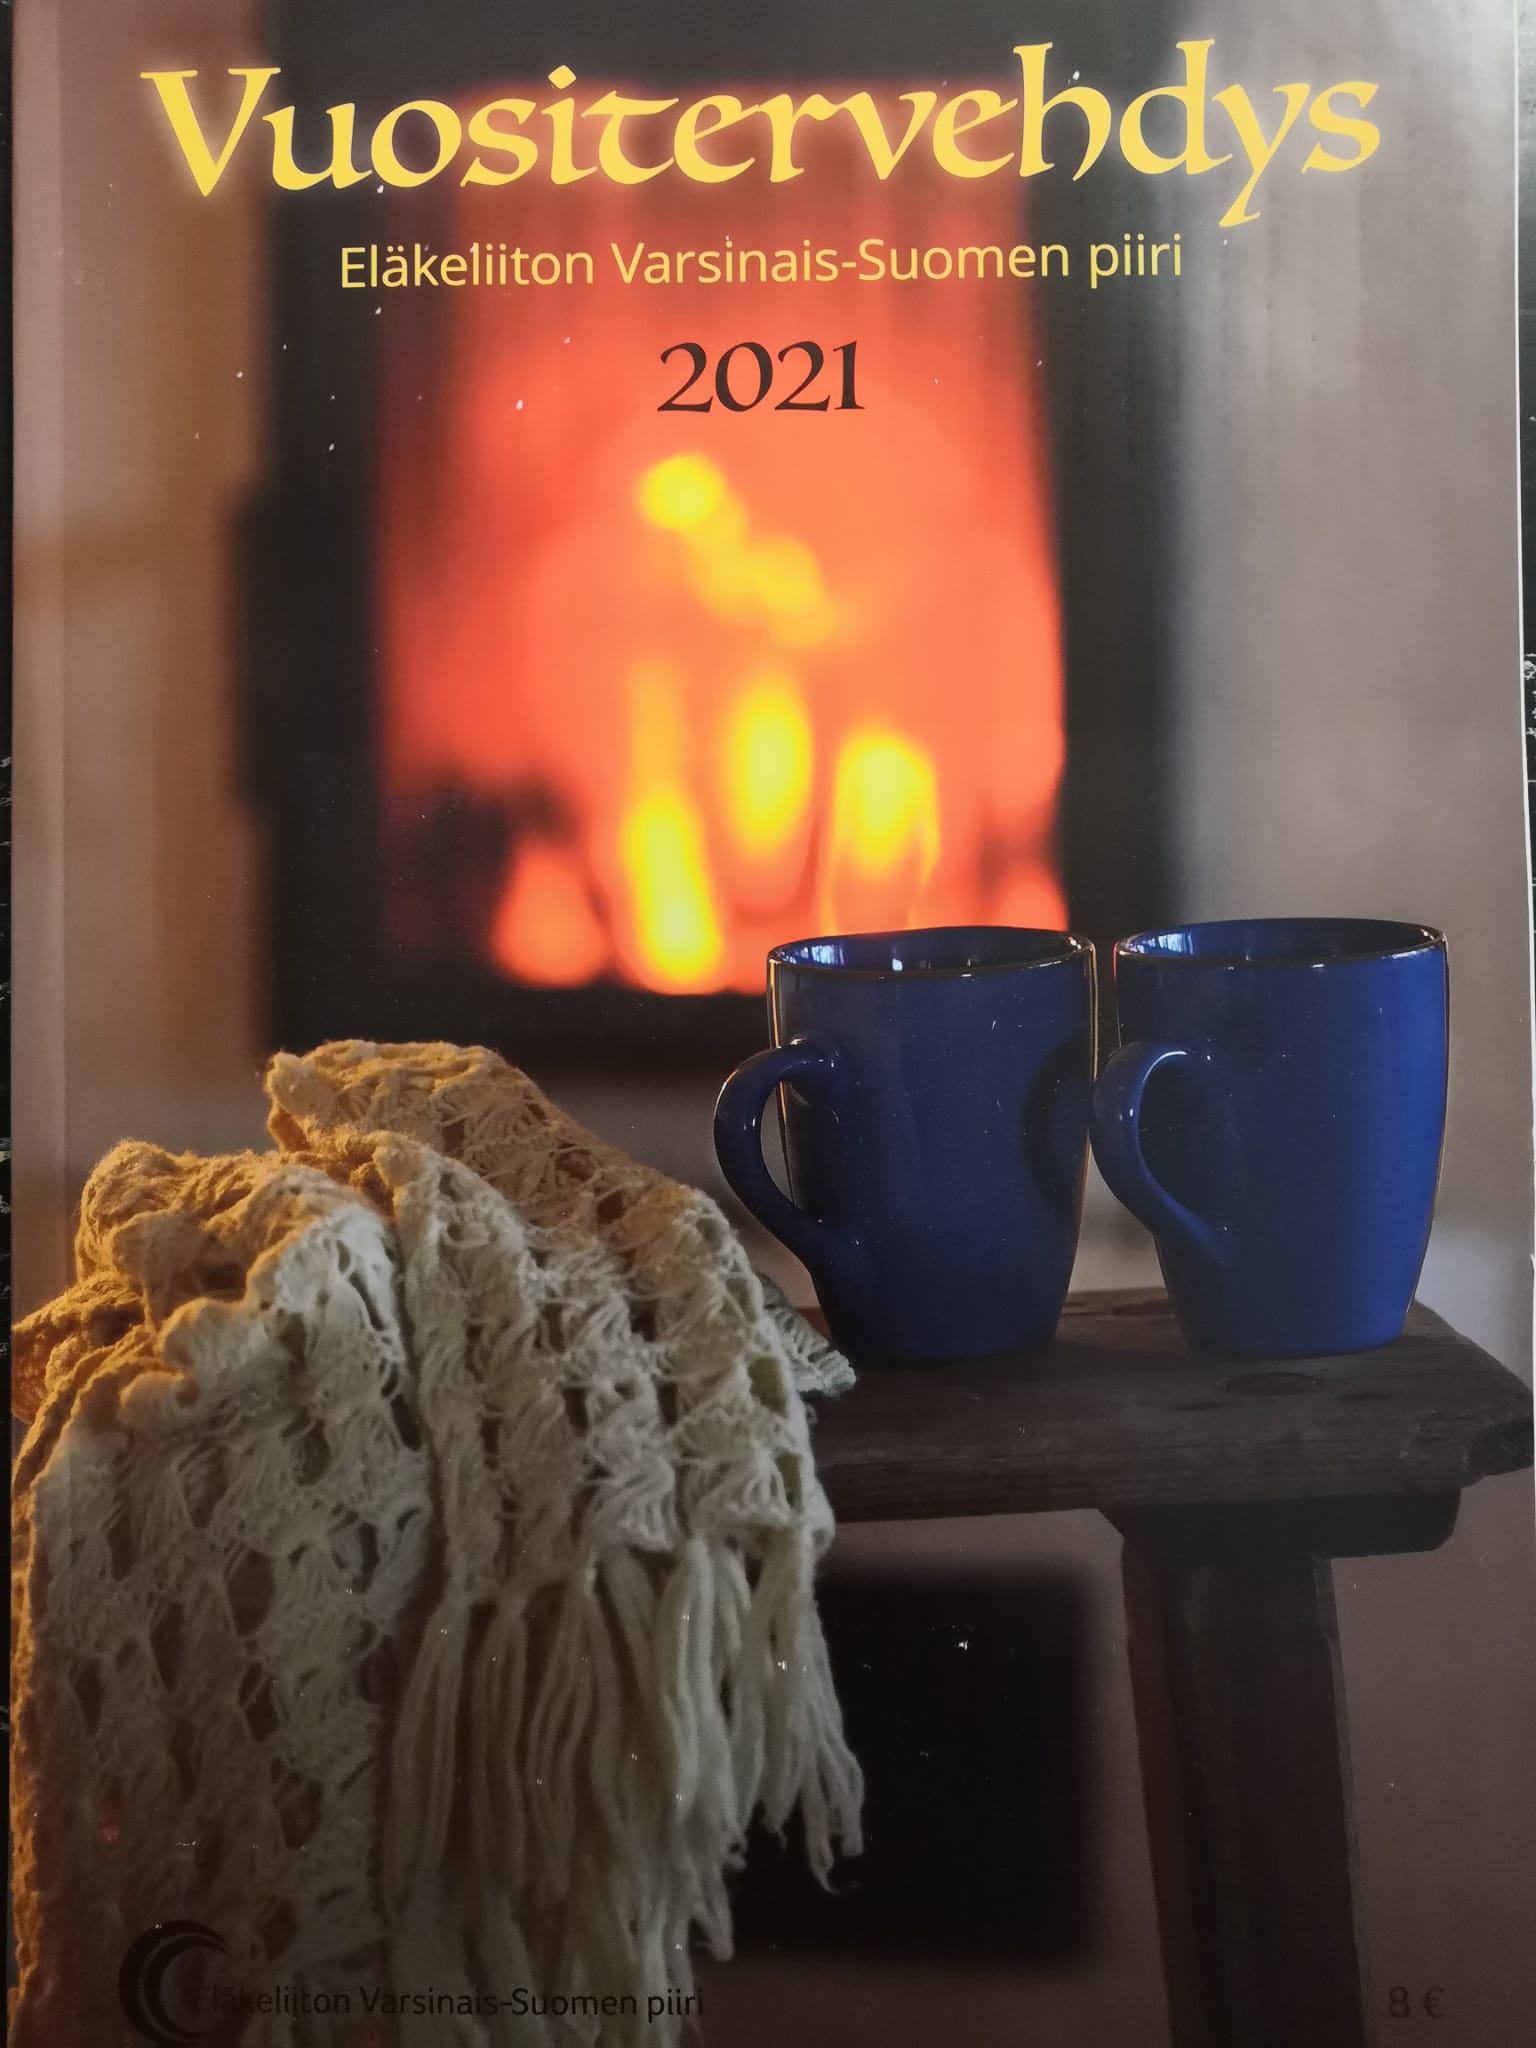 EL Yläne vuositervehdys-lehti 2021